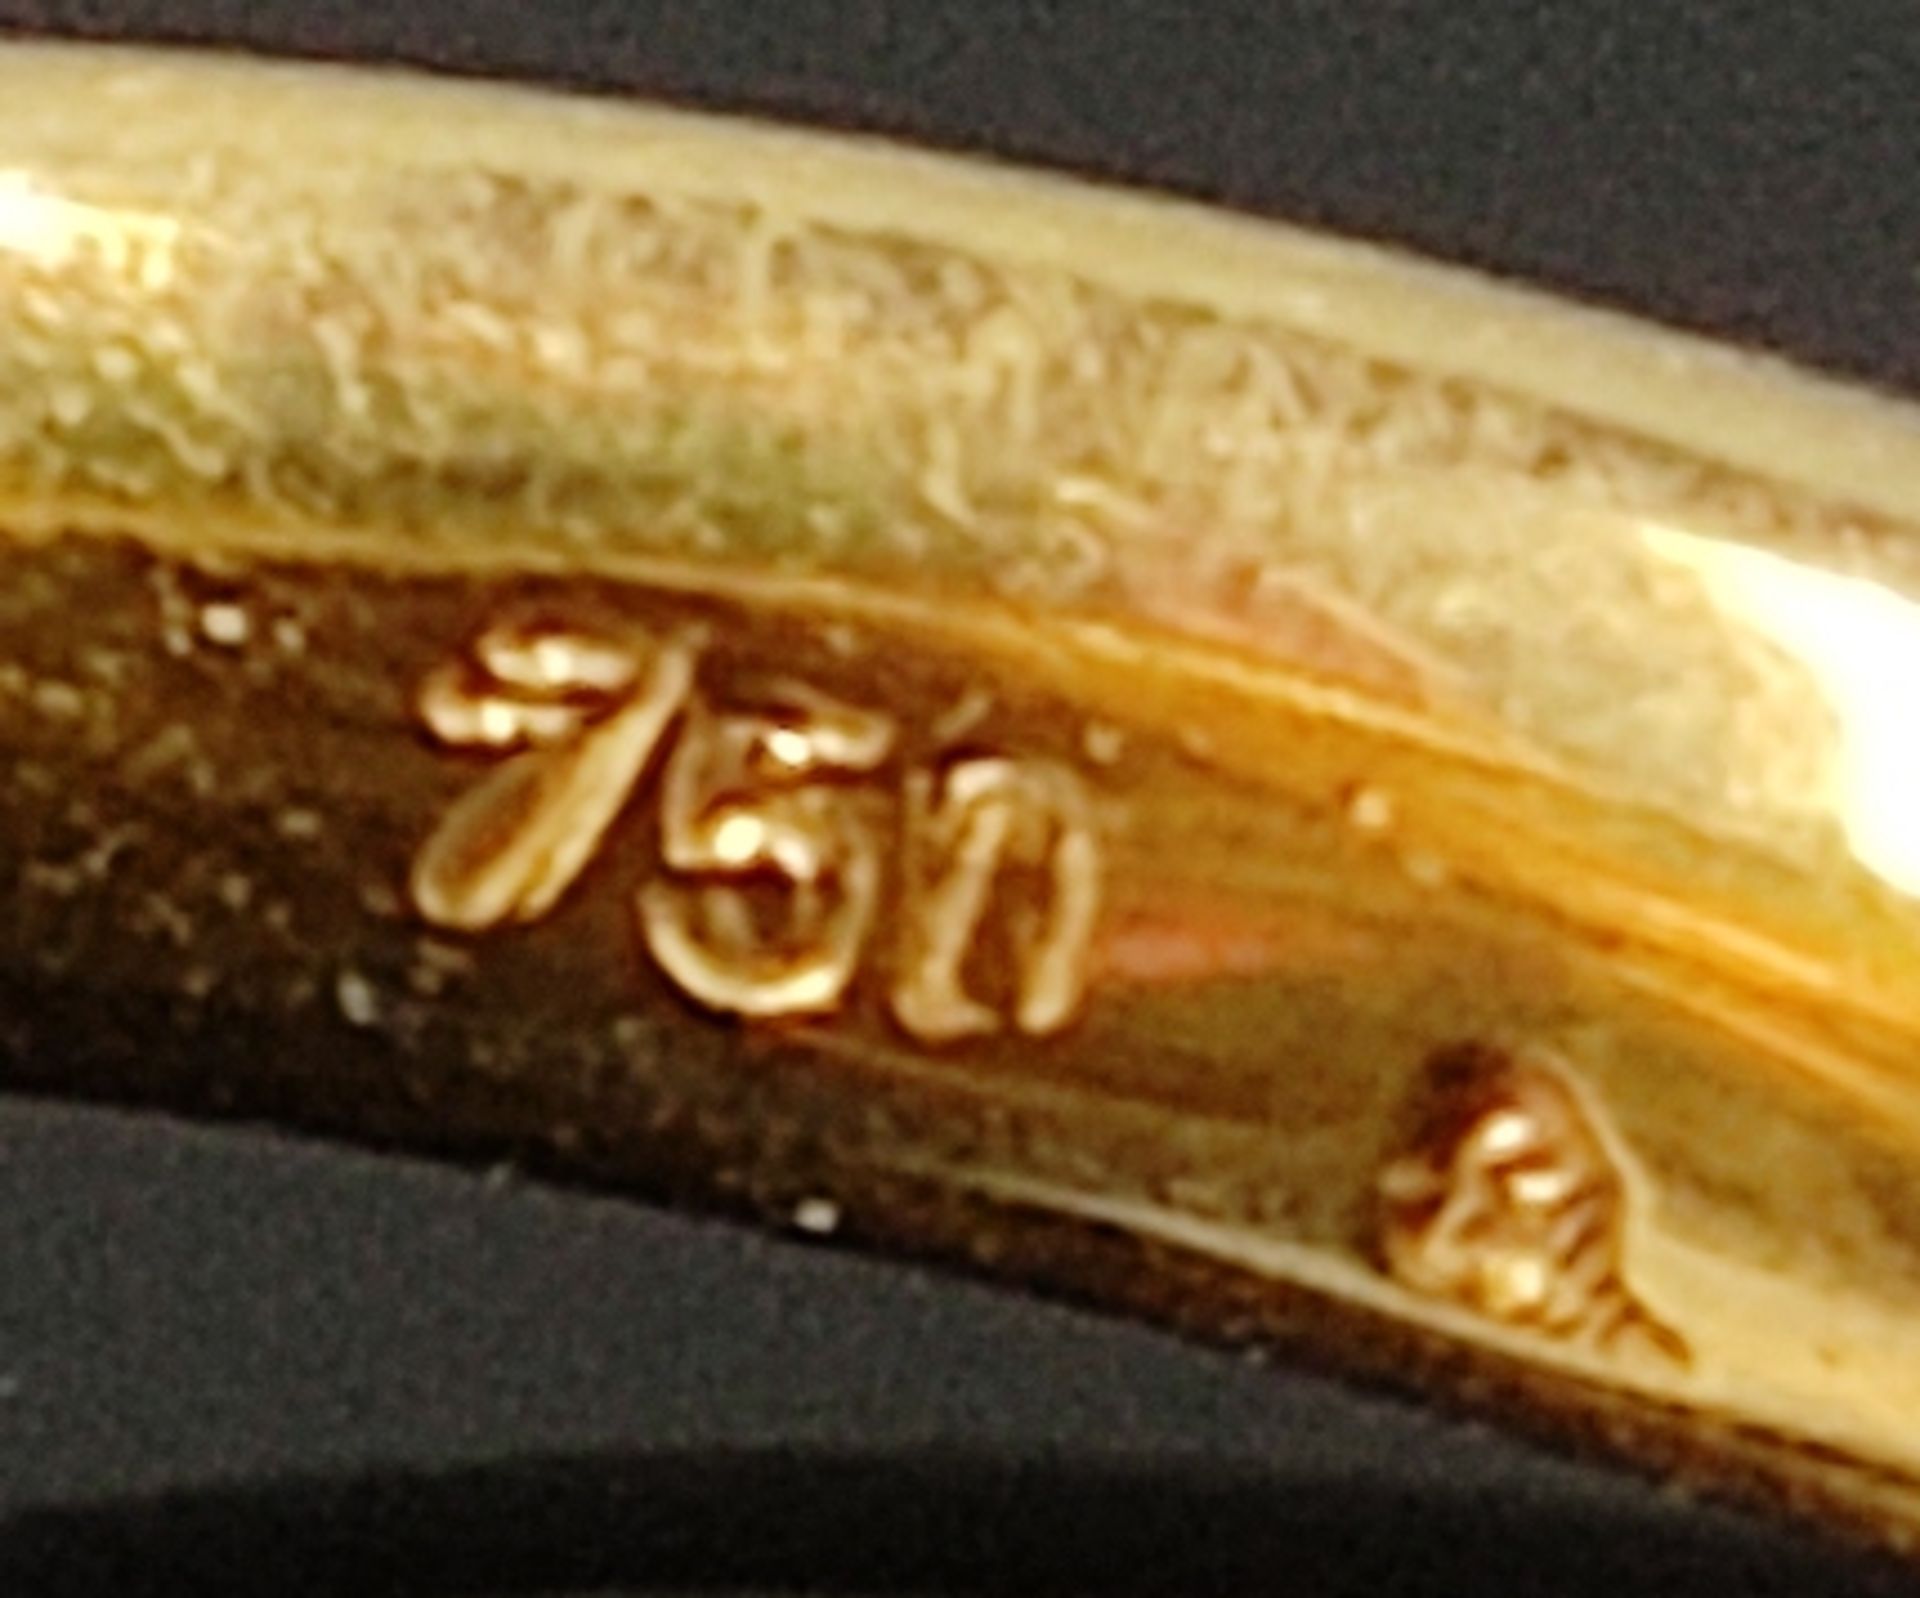 Opal-Diamant-Ring, mittig Opal-Cabochon von schönem Farbenspiel, ca. 4x7mm, daneben je ein kleiner  - Bild 3 aus 3